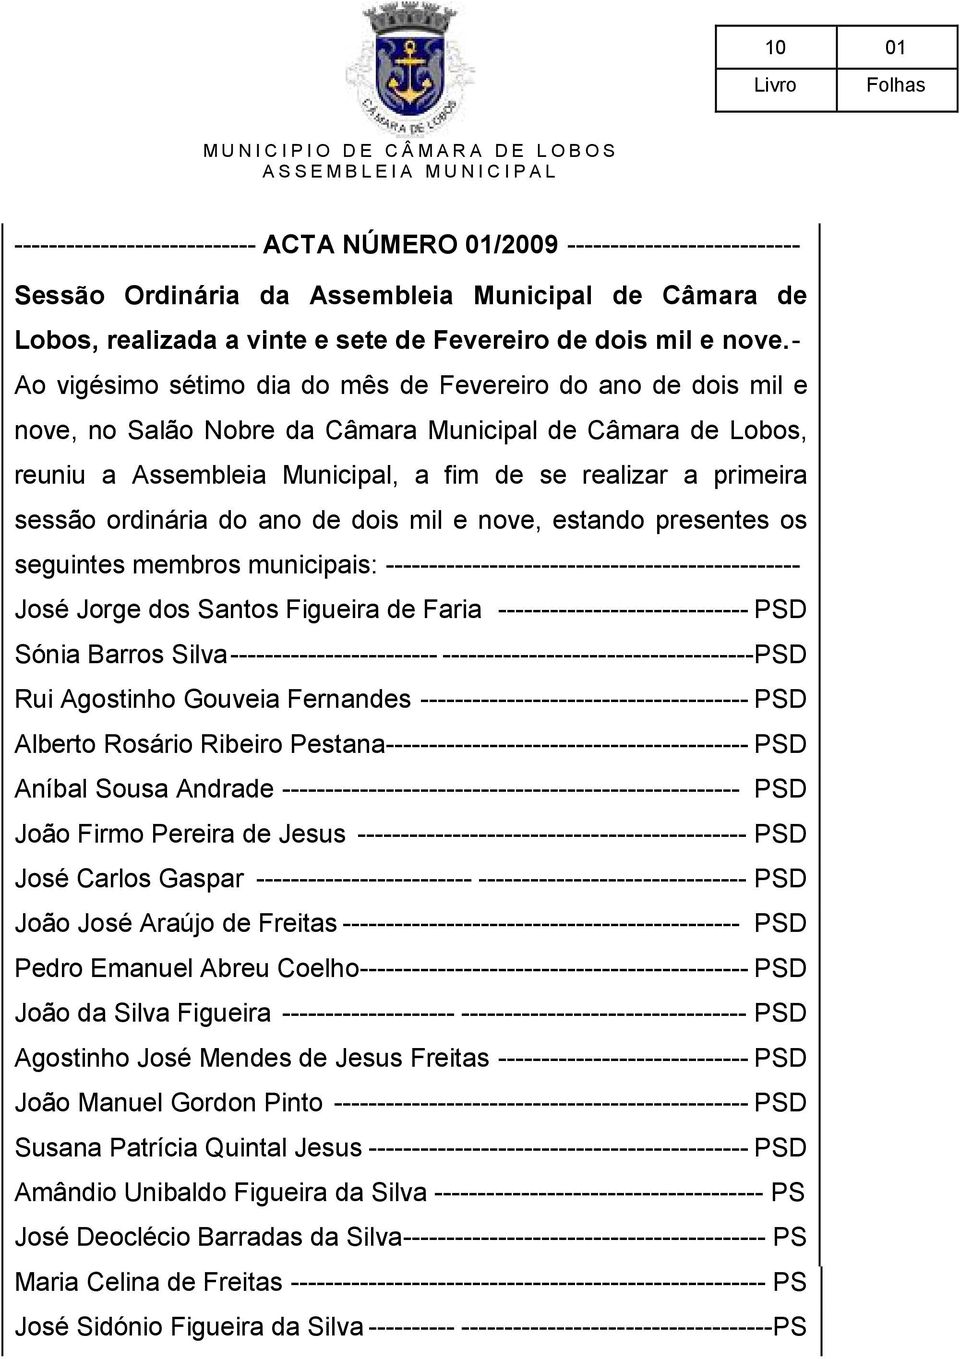 sessão ordinária do ano de dois mil e nove, estando presentes os seguintes membros municipais: ------------------------------------------------ José Jorge dos Santos Figueira de Faria